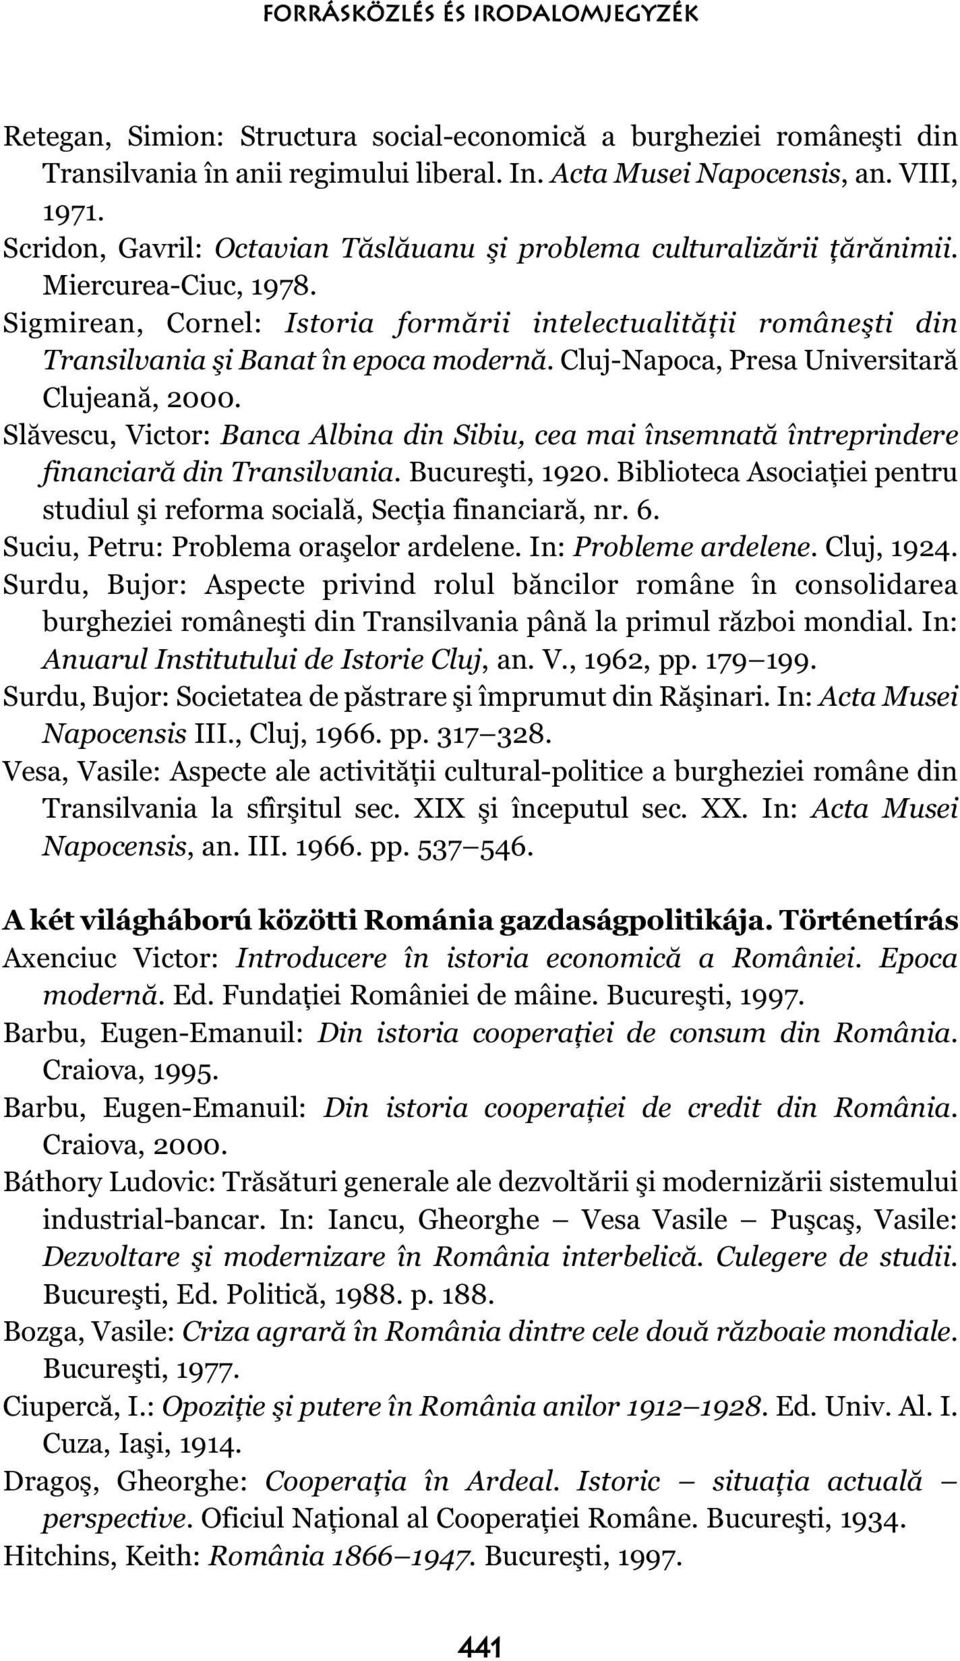 Sigmirean, Cornel: Istoria formării intelectualităţii româneşti din Transilvania şi Banat în epoca modernă. Cluj-Napoca, Presa Universitară Clujeană, 2000.